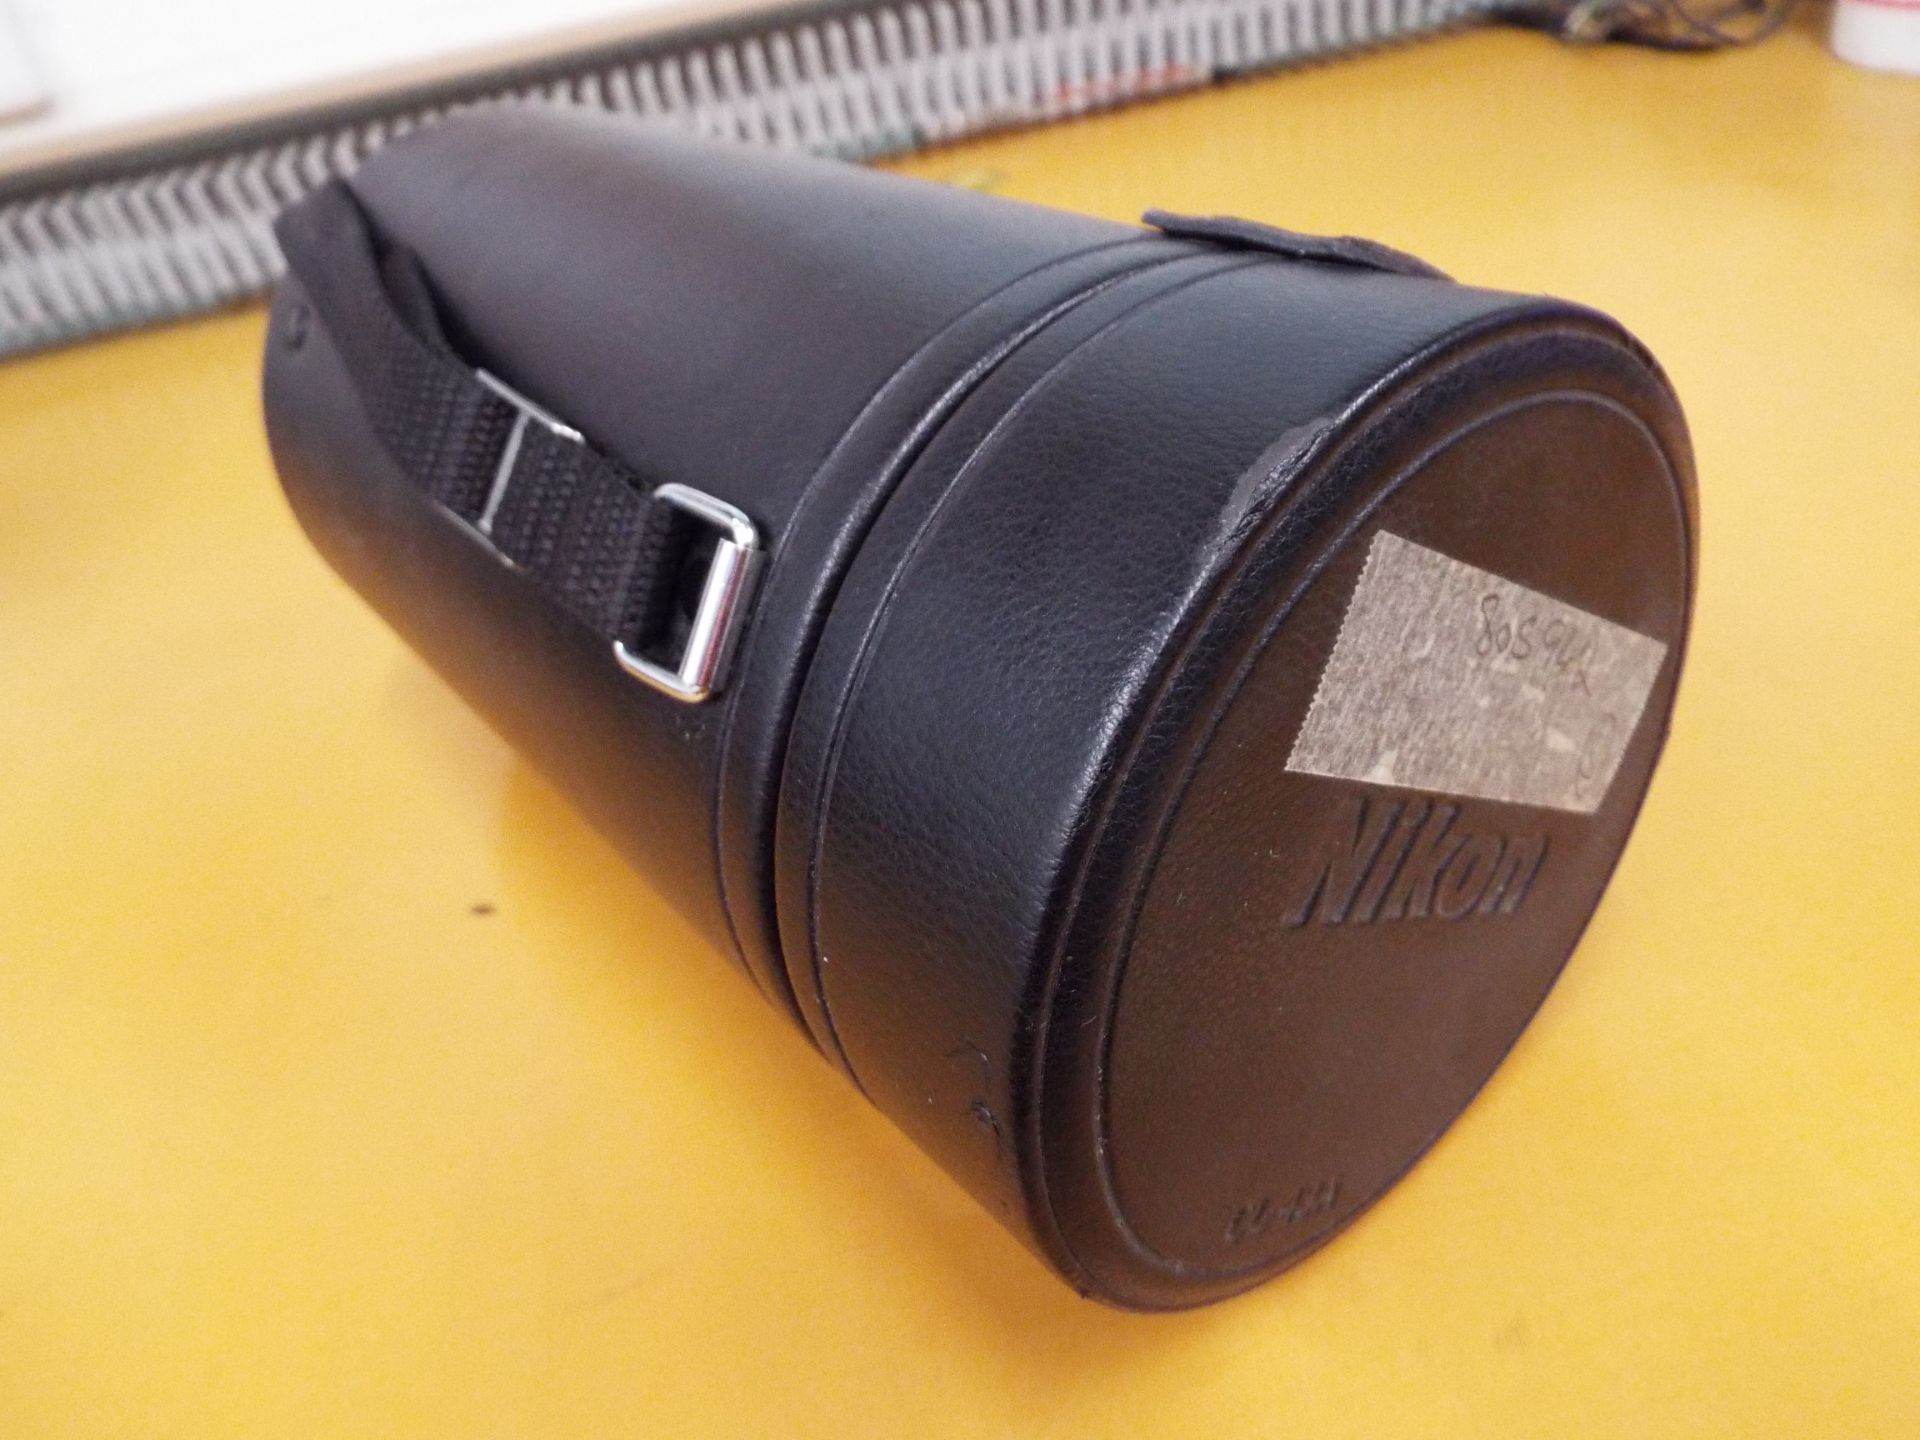 Nikon ED AF Nikkor 80-200mm 1:2.8 D Lense with Leather Carry Case - Image 7 of 7